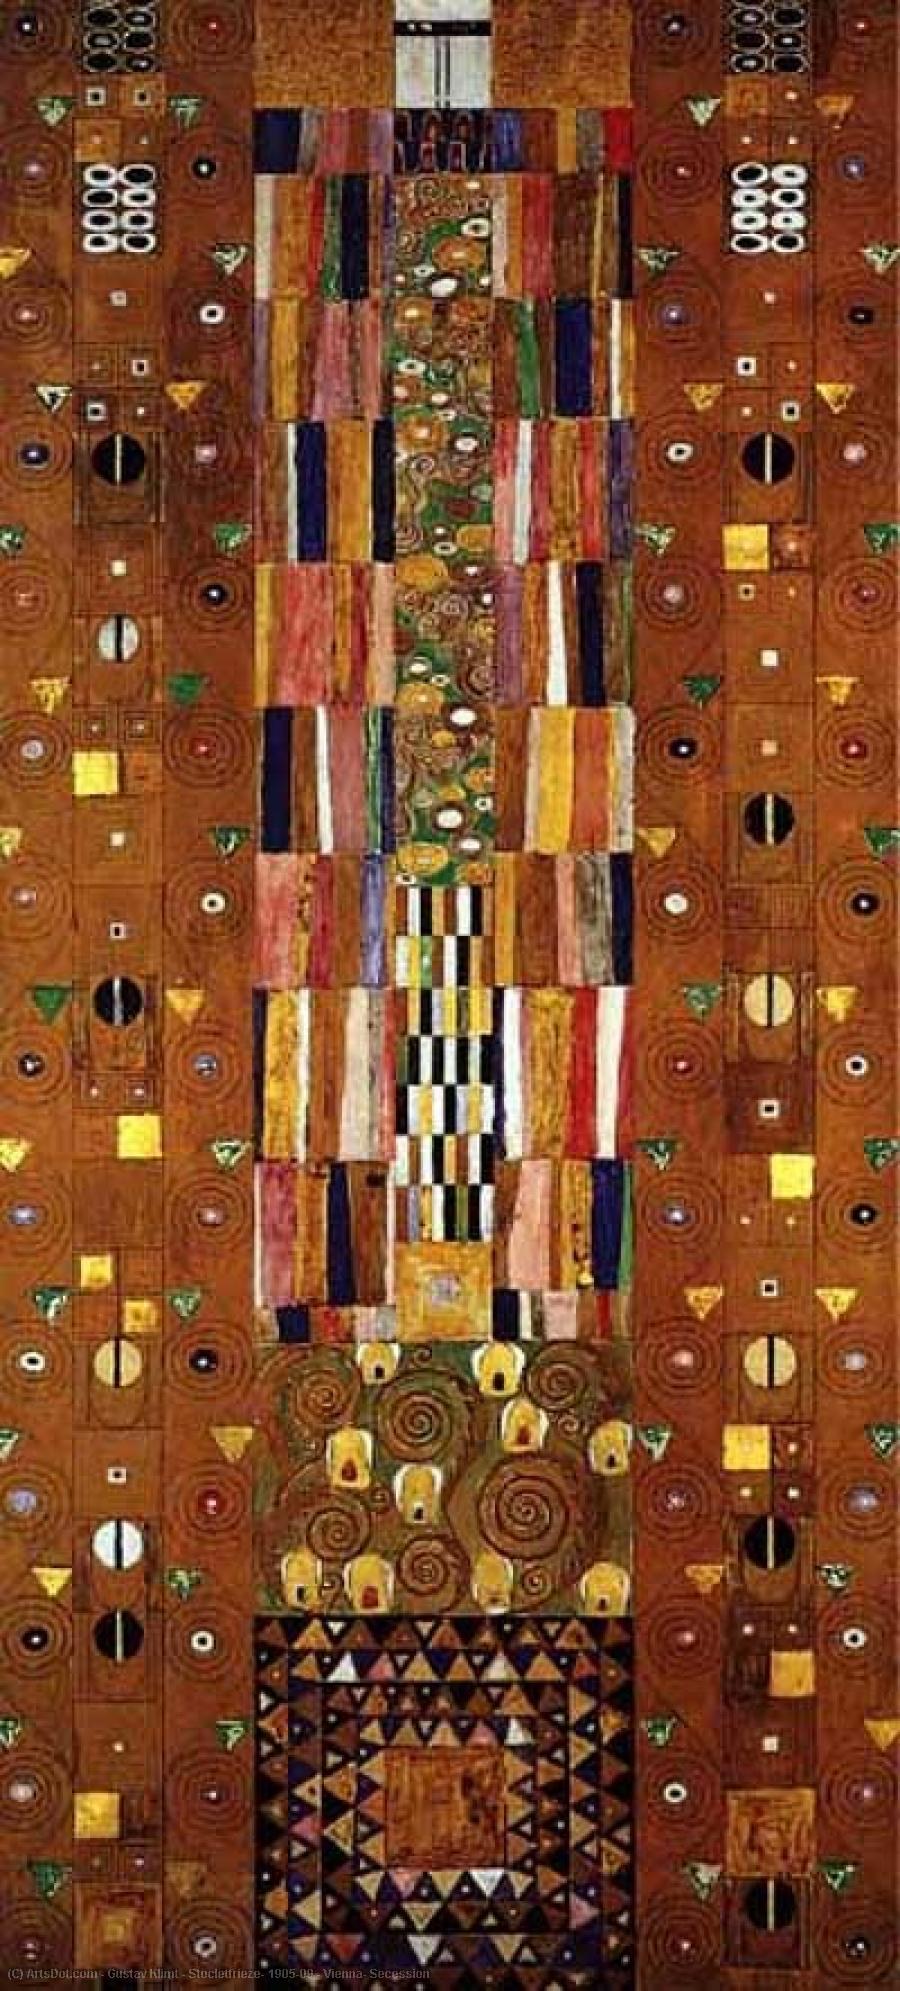 Wikioo.org - สารานุกรมวิจิตรศิลป์ - จิตรกรรม Gustav Klimt - Stocletfrieze, 1905-09 - Vienna, Secession